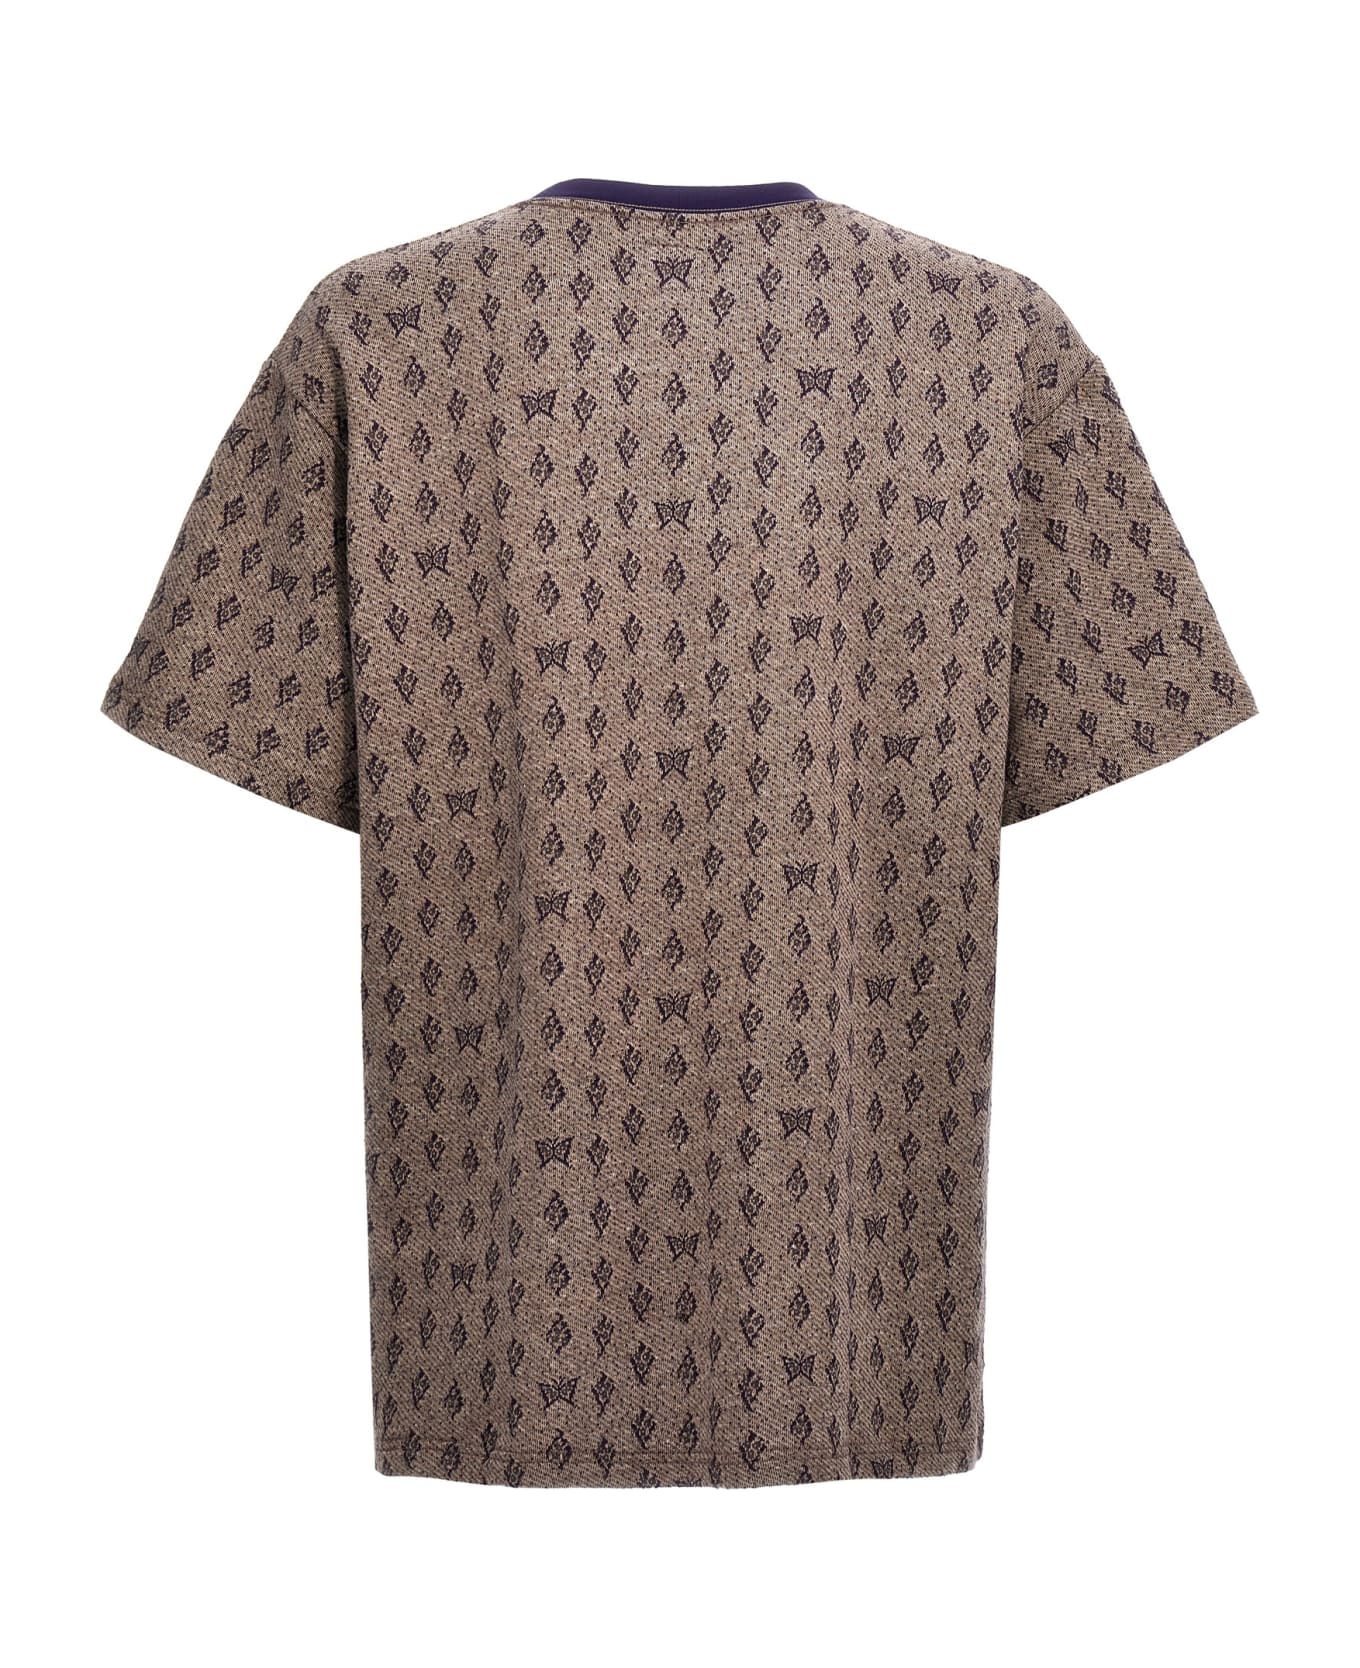 Needles Jacquard Patterned T-shirt - Purple